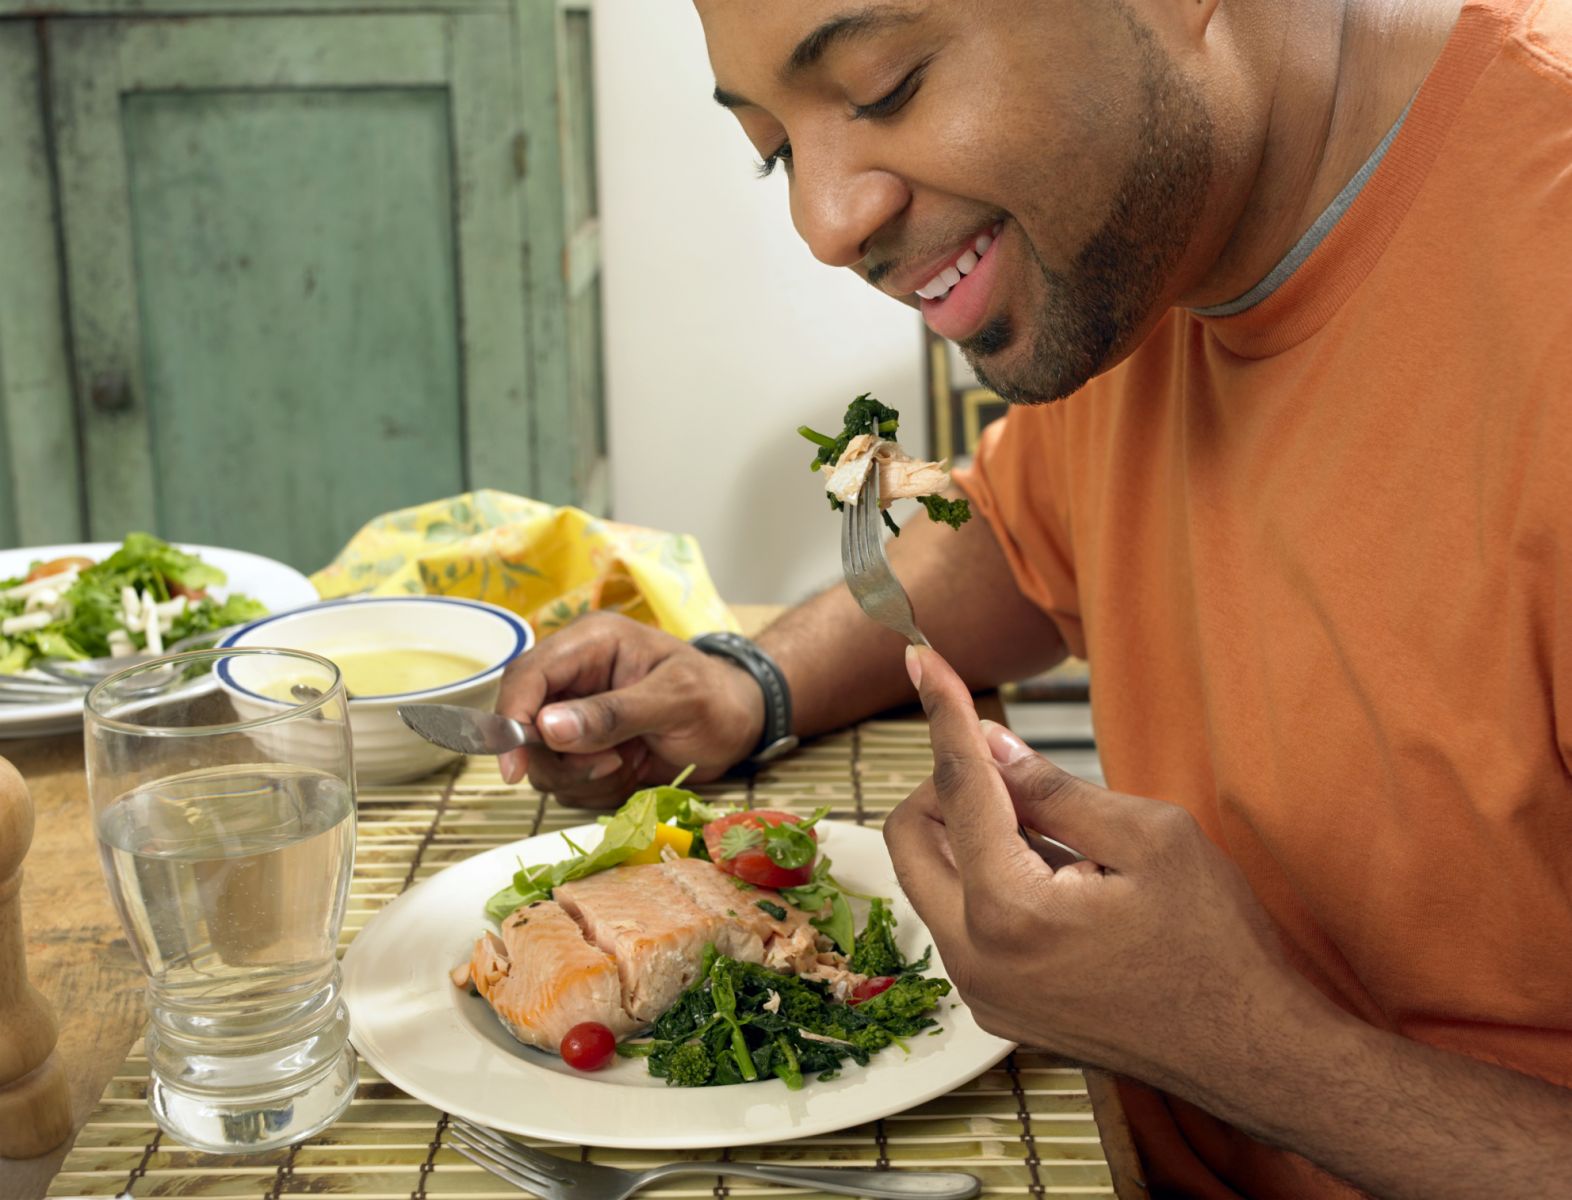 omul mănâncă somon , o sursă bună de acizi grași omega-3 care protejează inima